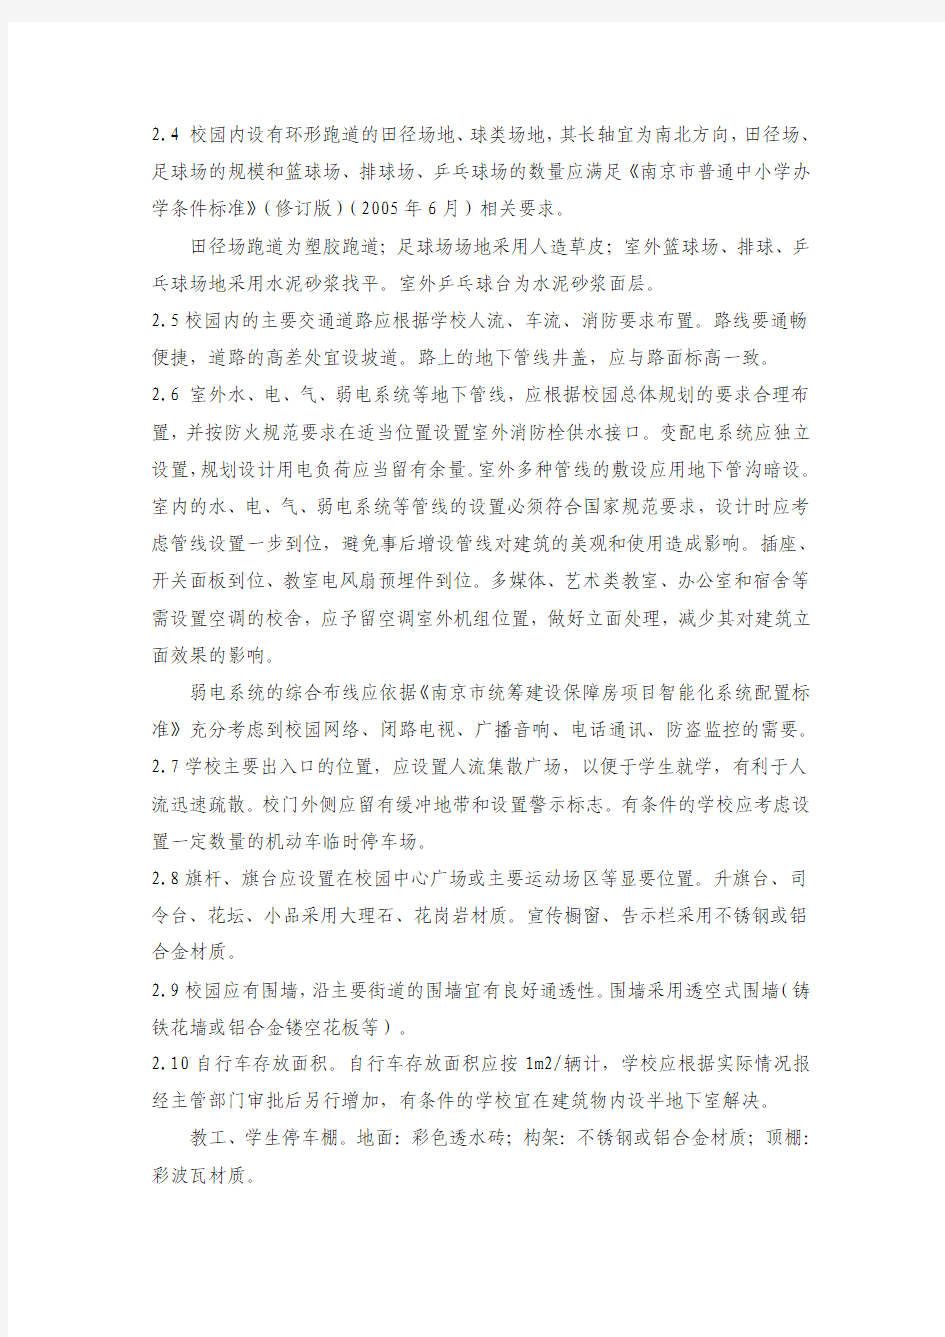 (20111110杨帆征求意见稿)南京市统筹建设保障房项目中小学及幼儿园工程交付标准1